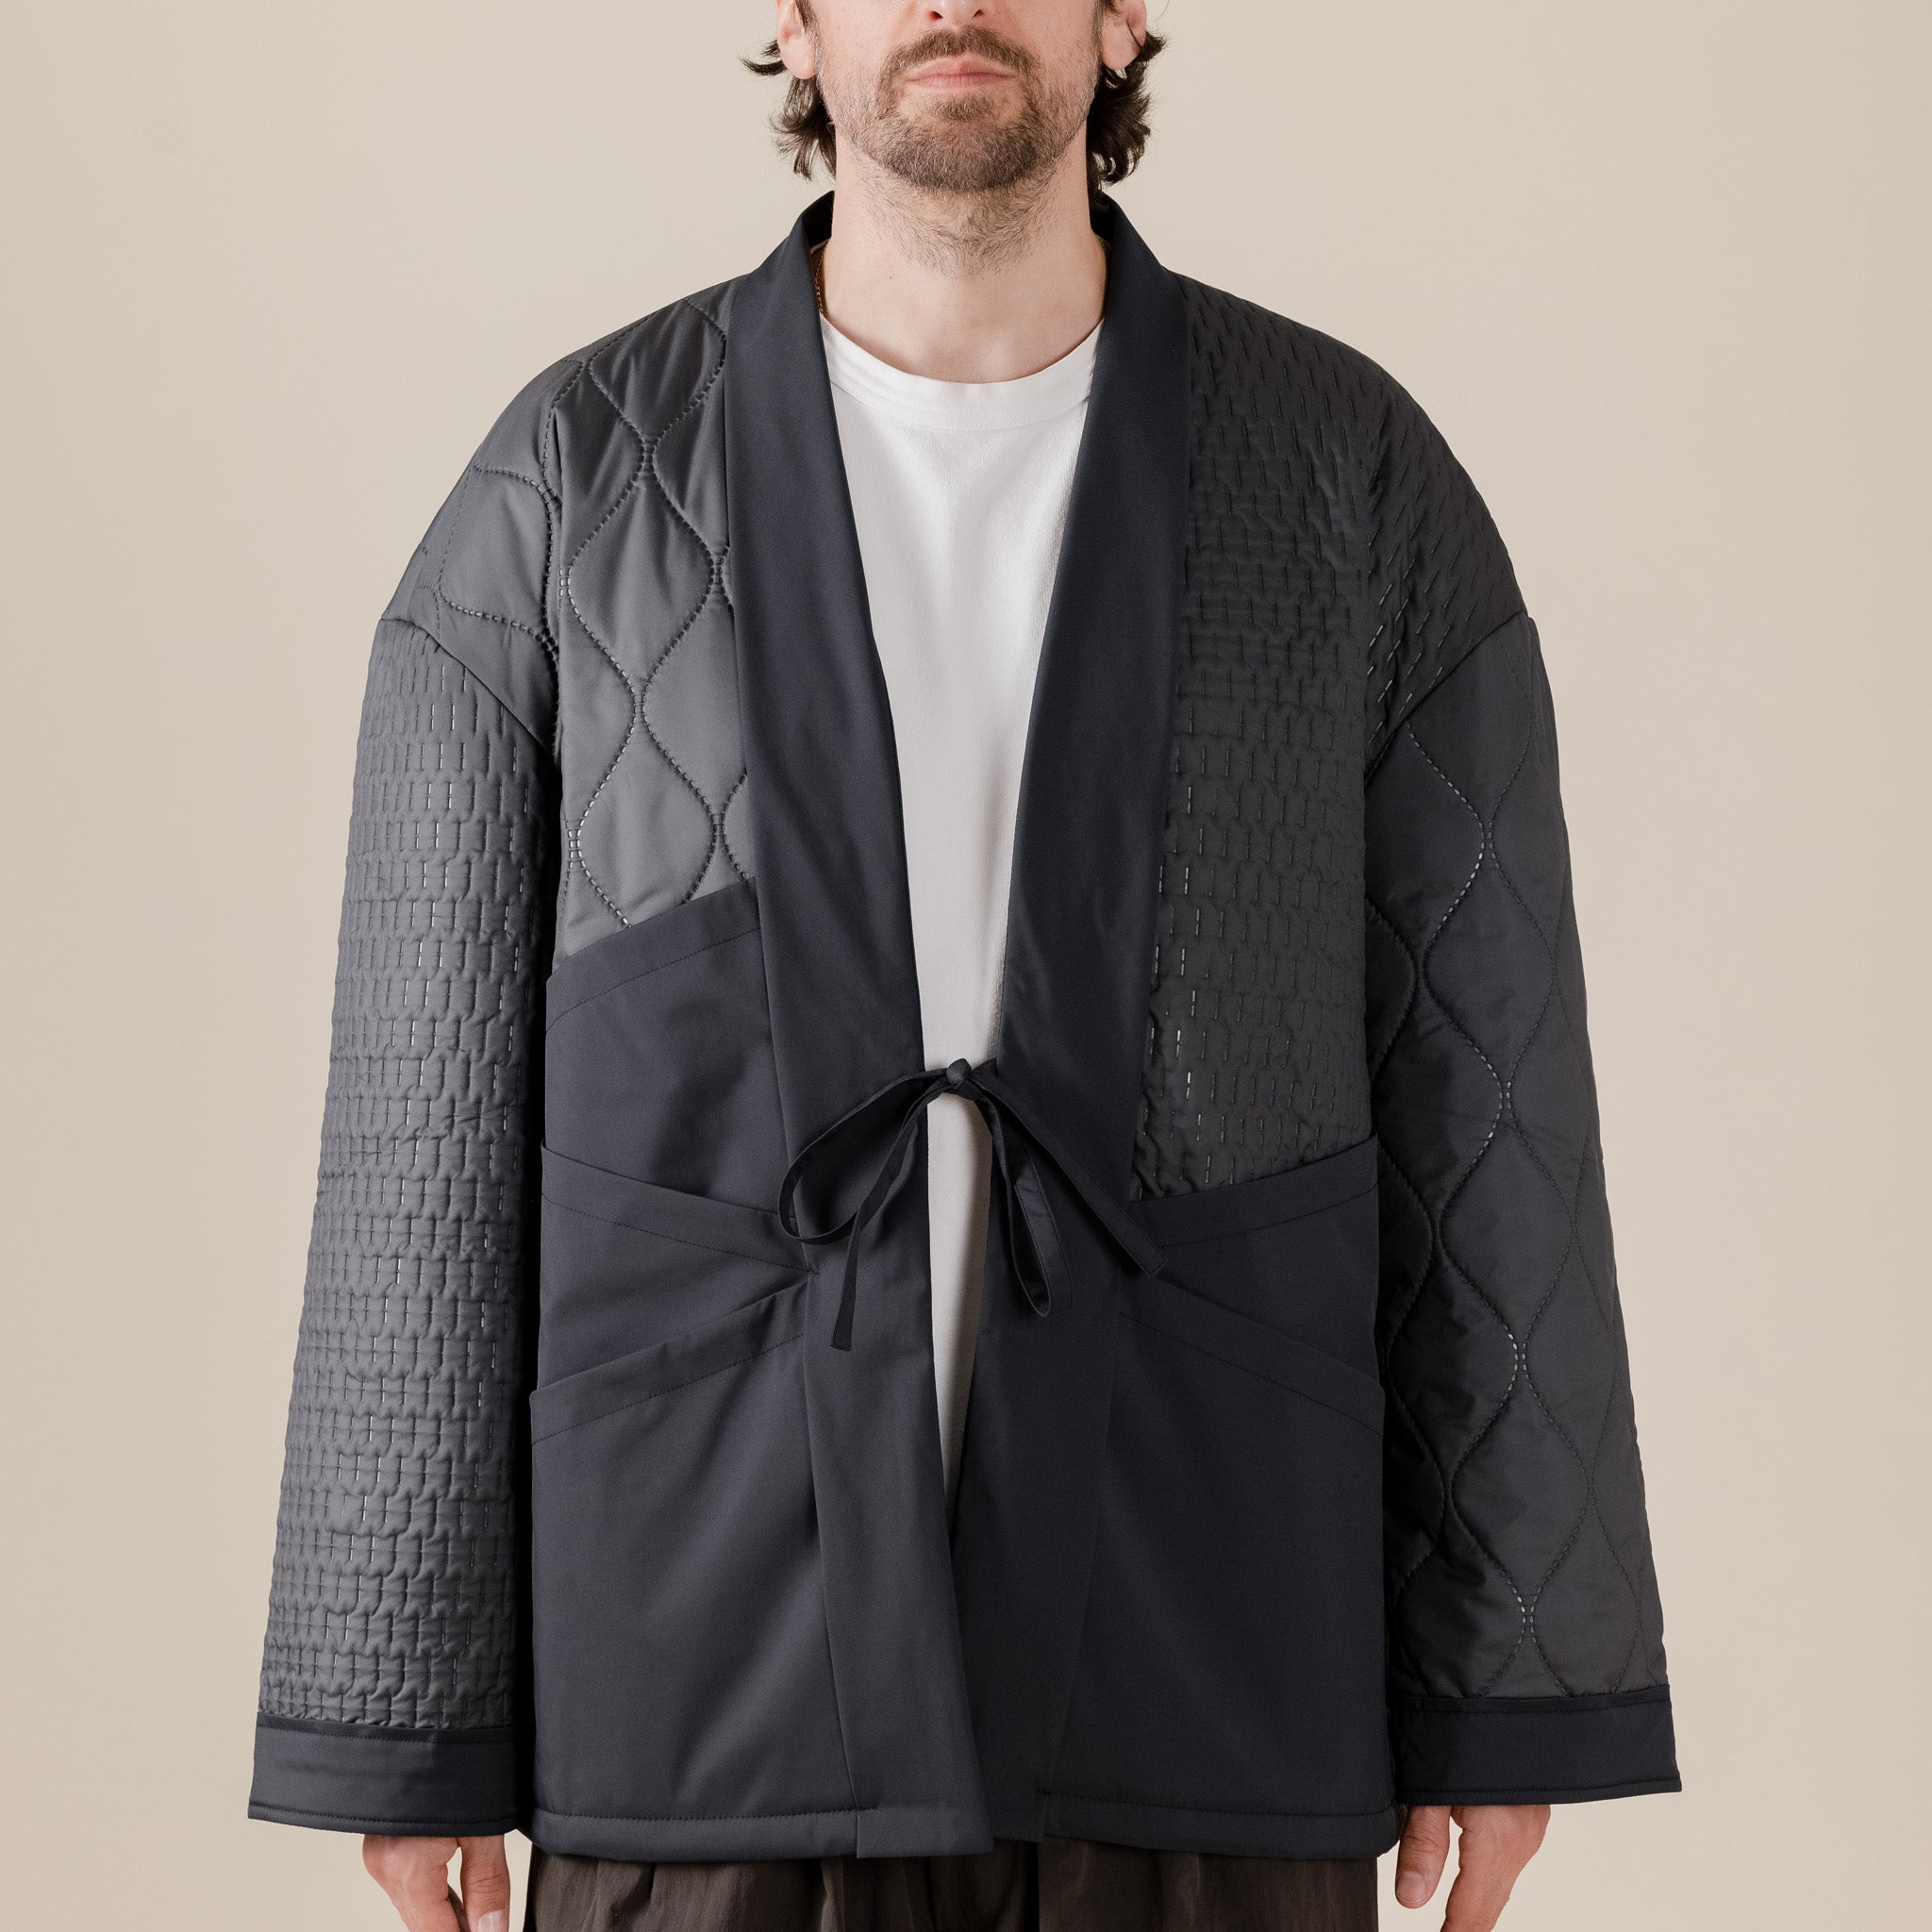 Oqliq - Origami Smawarm Kimono Jacket - Black Oqliq UK USA Stockist